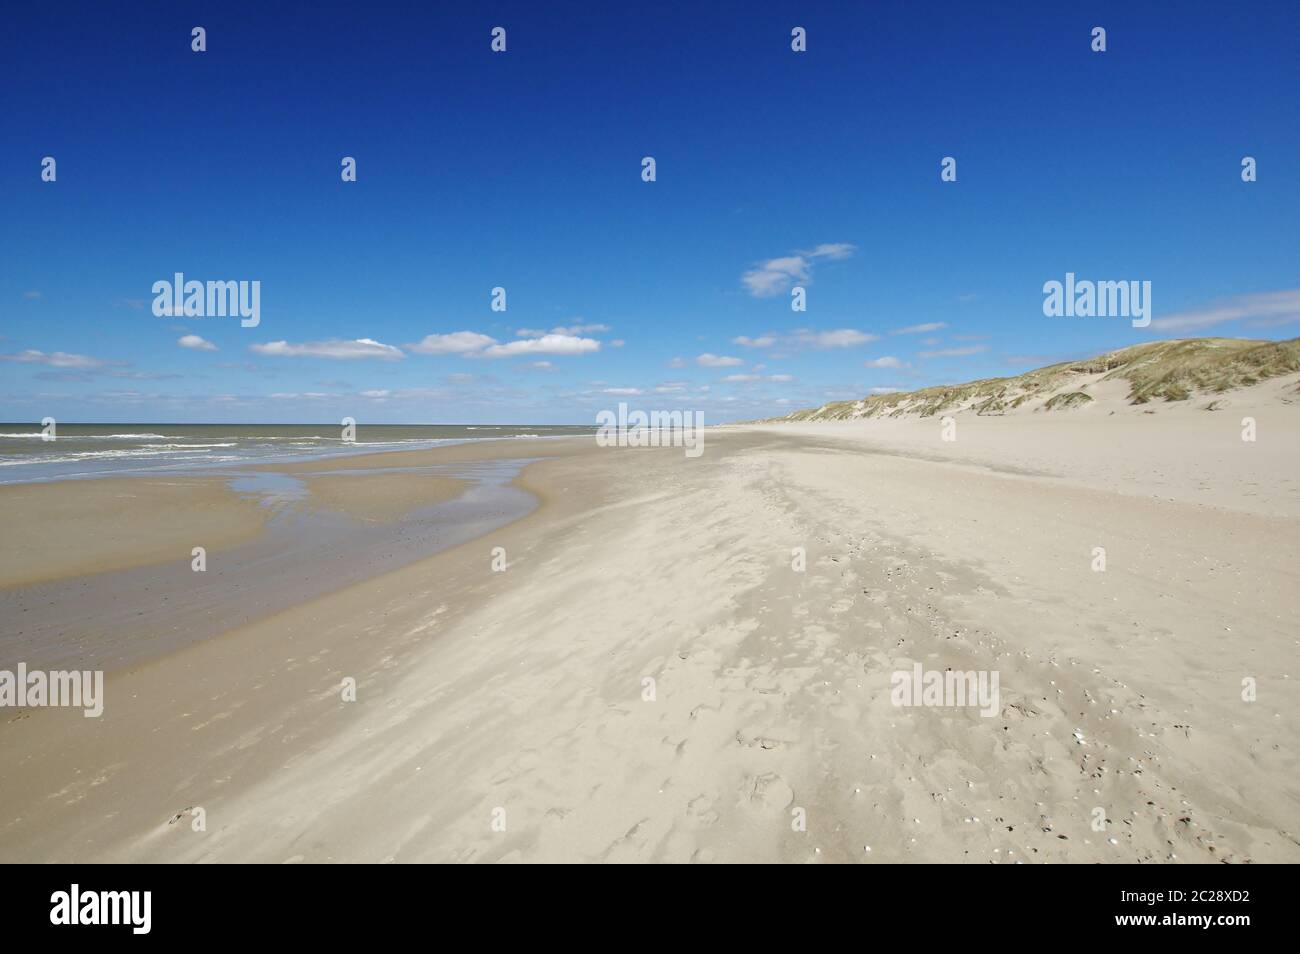 Il Mare del Nord e la spiaggia di sabbia, Julianadorp, vista in direzione 'Strandslag Falga', distretto Den Helder, provincia Olanda, Paesi Bassi, Europa occidentale Foto Stock